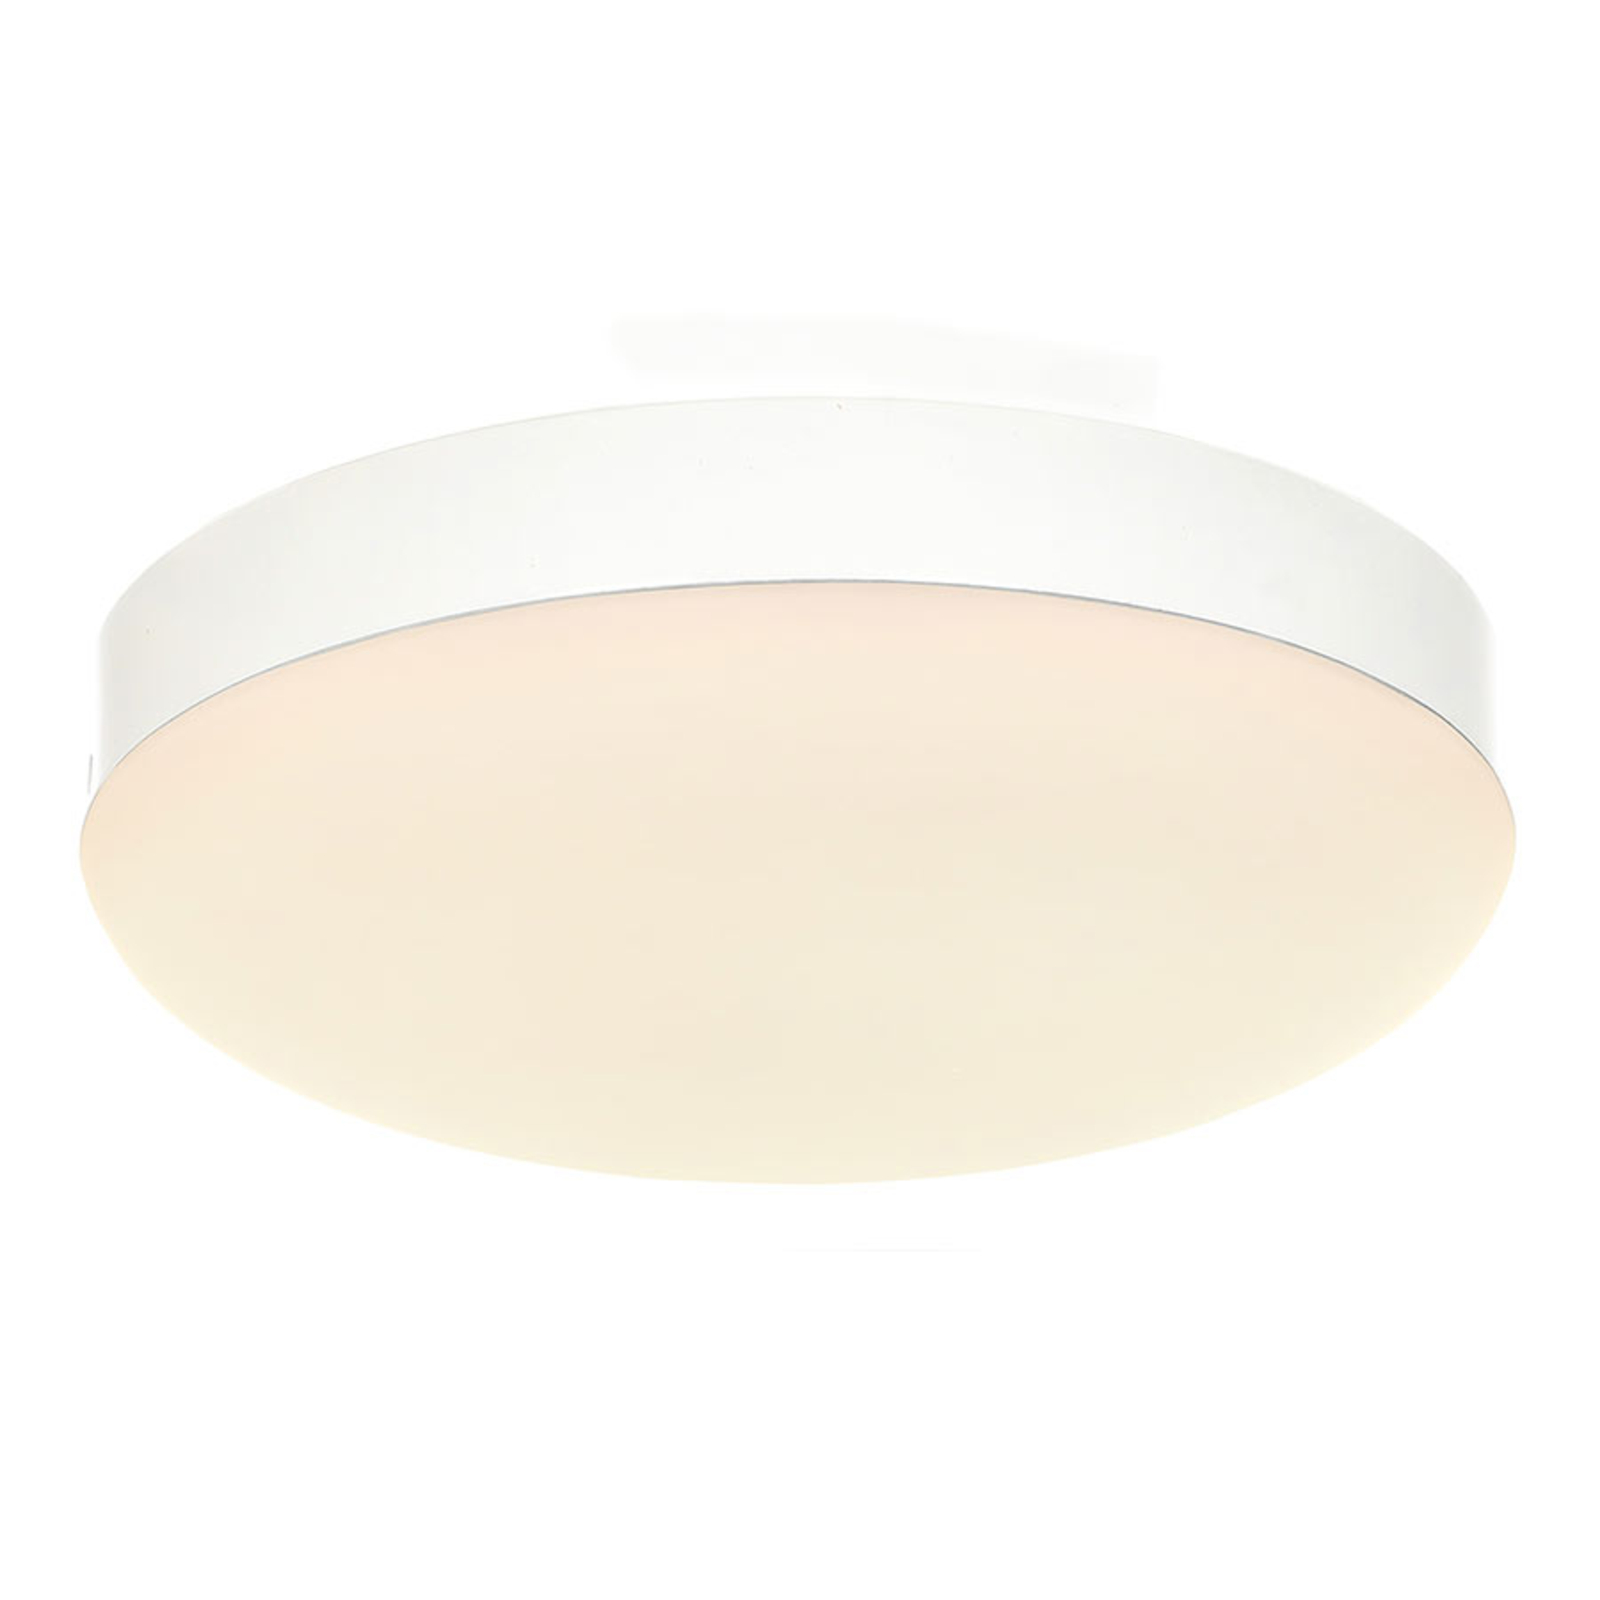 LED aanbouw lamp voor Eco Concept, wit